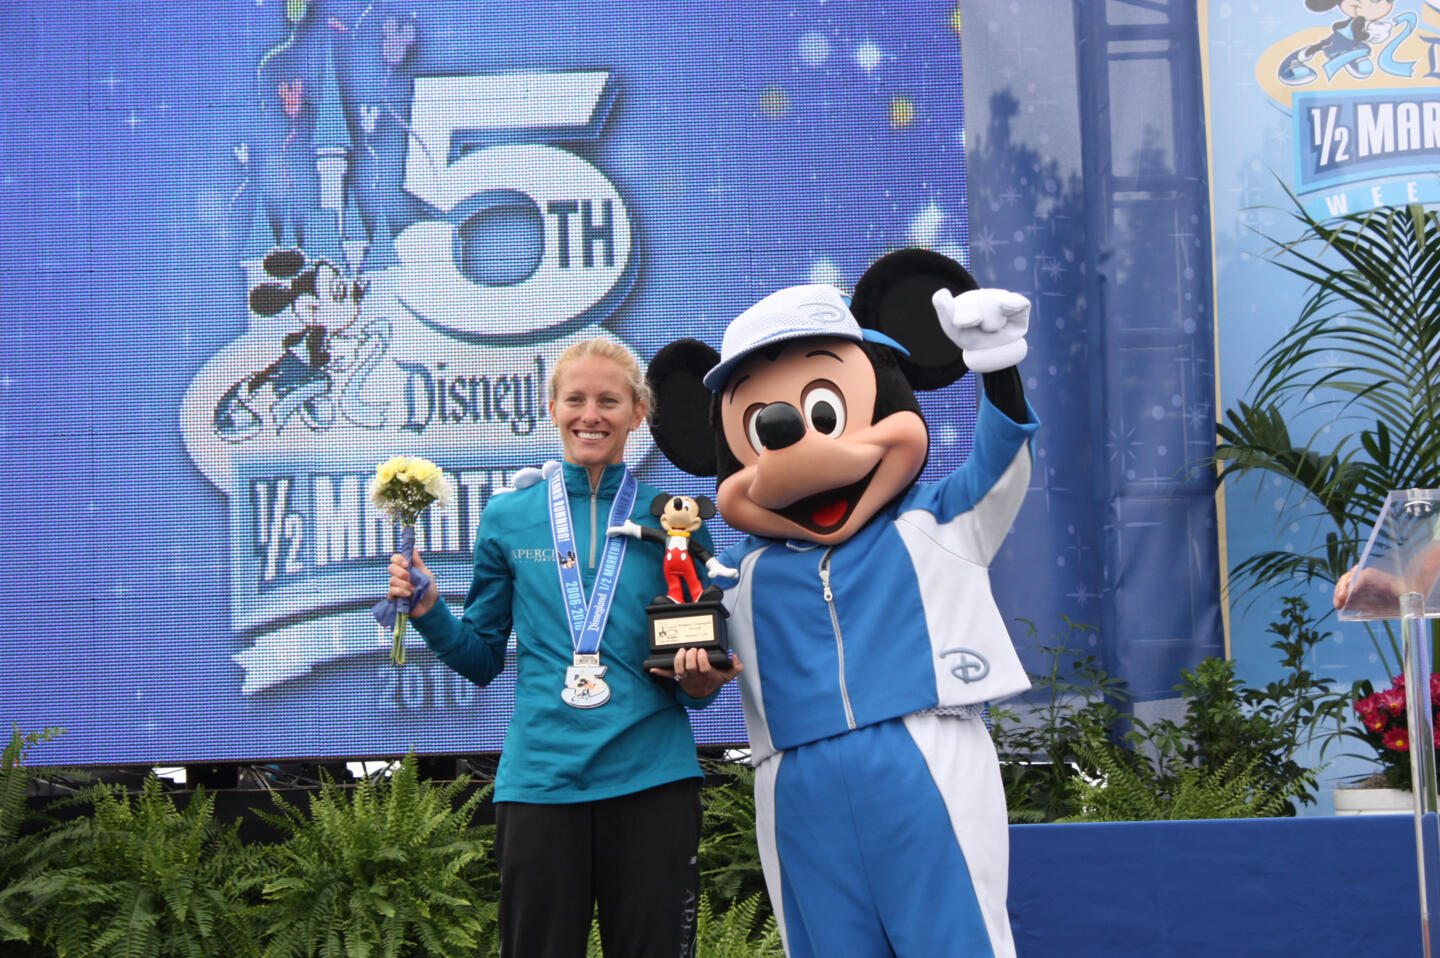 Eine siegreiche Läuferin, die auf der Bühne eine Trophäe und einen Blumenstrauß hält, begleitet von Mickey Mouse in Sportkleidung, bei der 5. Ausgabe des Disney 1/2 Marathons.